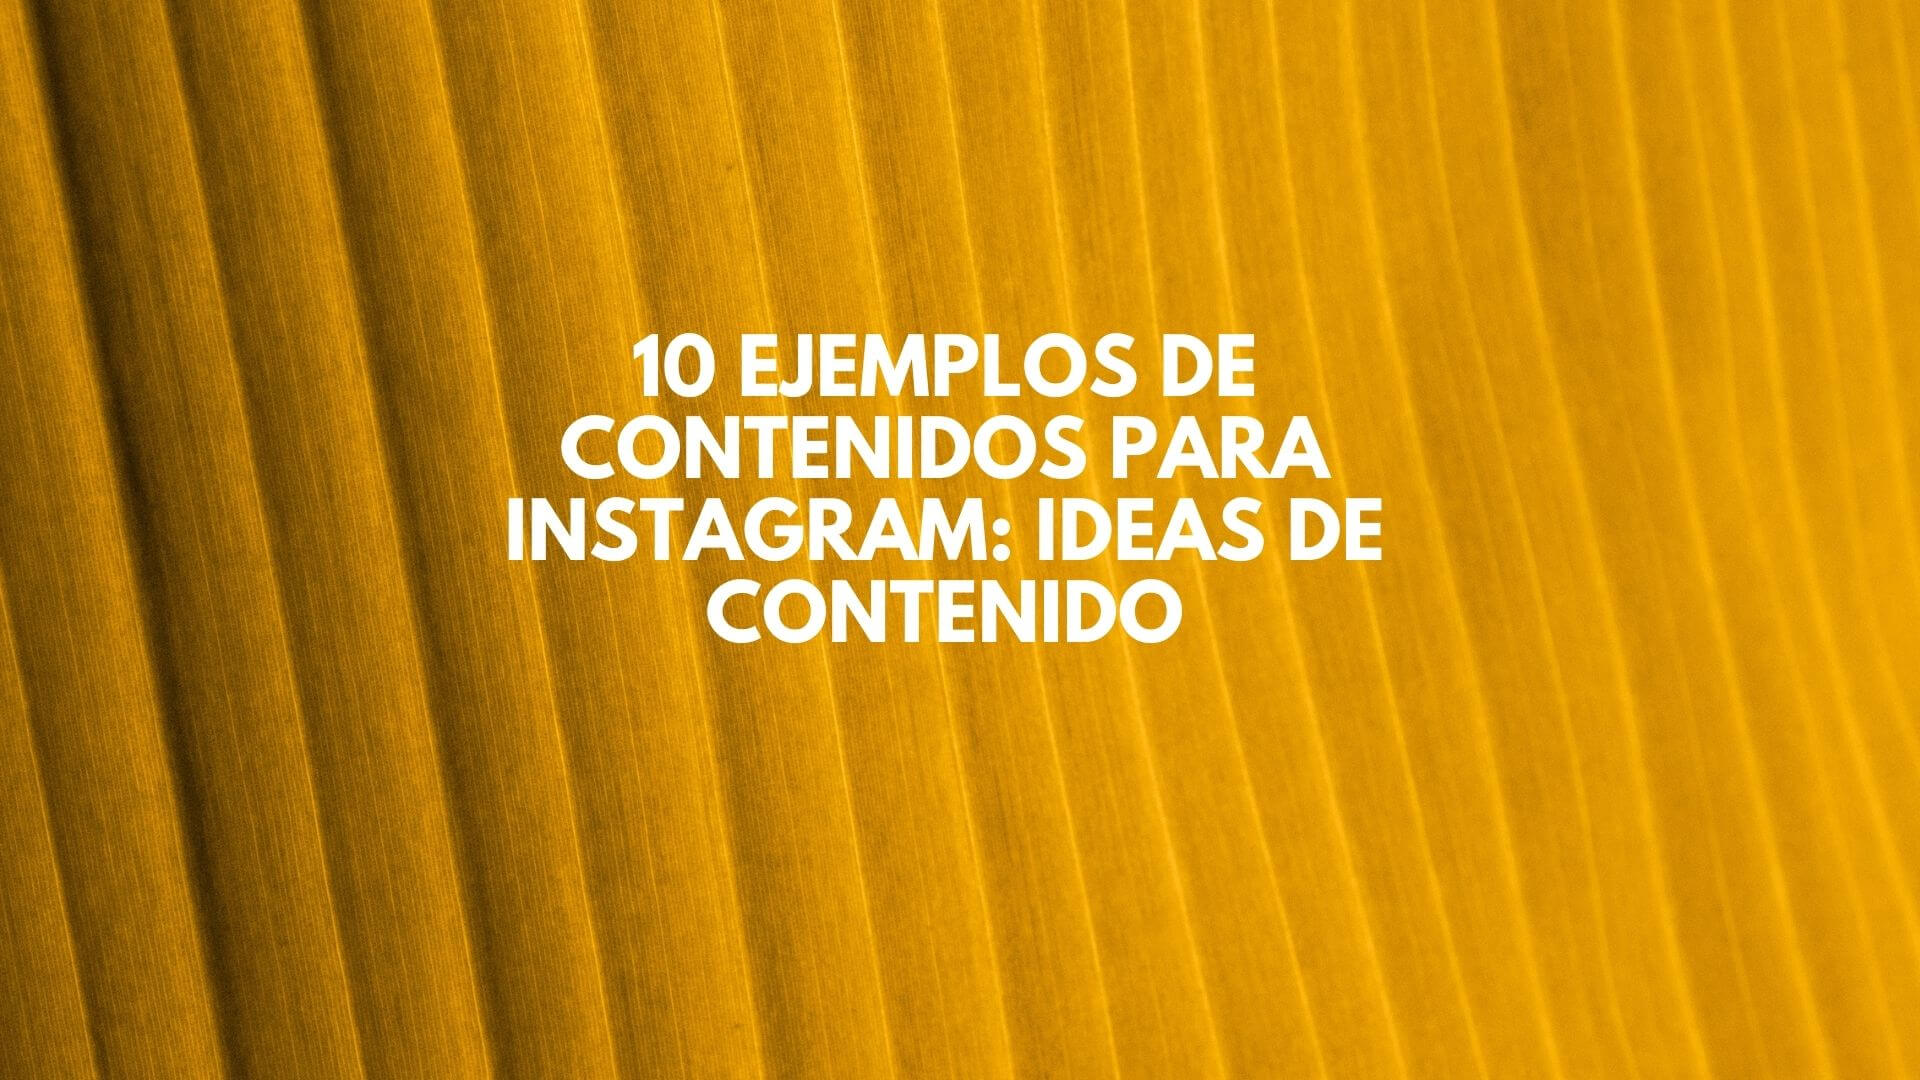 10 Ejemplos de contenidos para Instagram: ideas de contenido